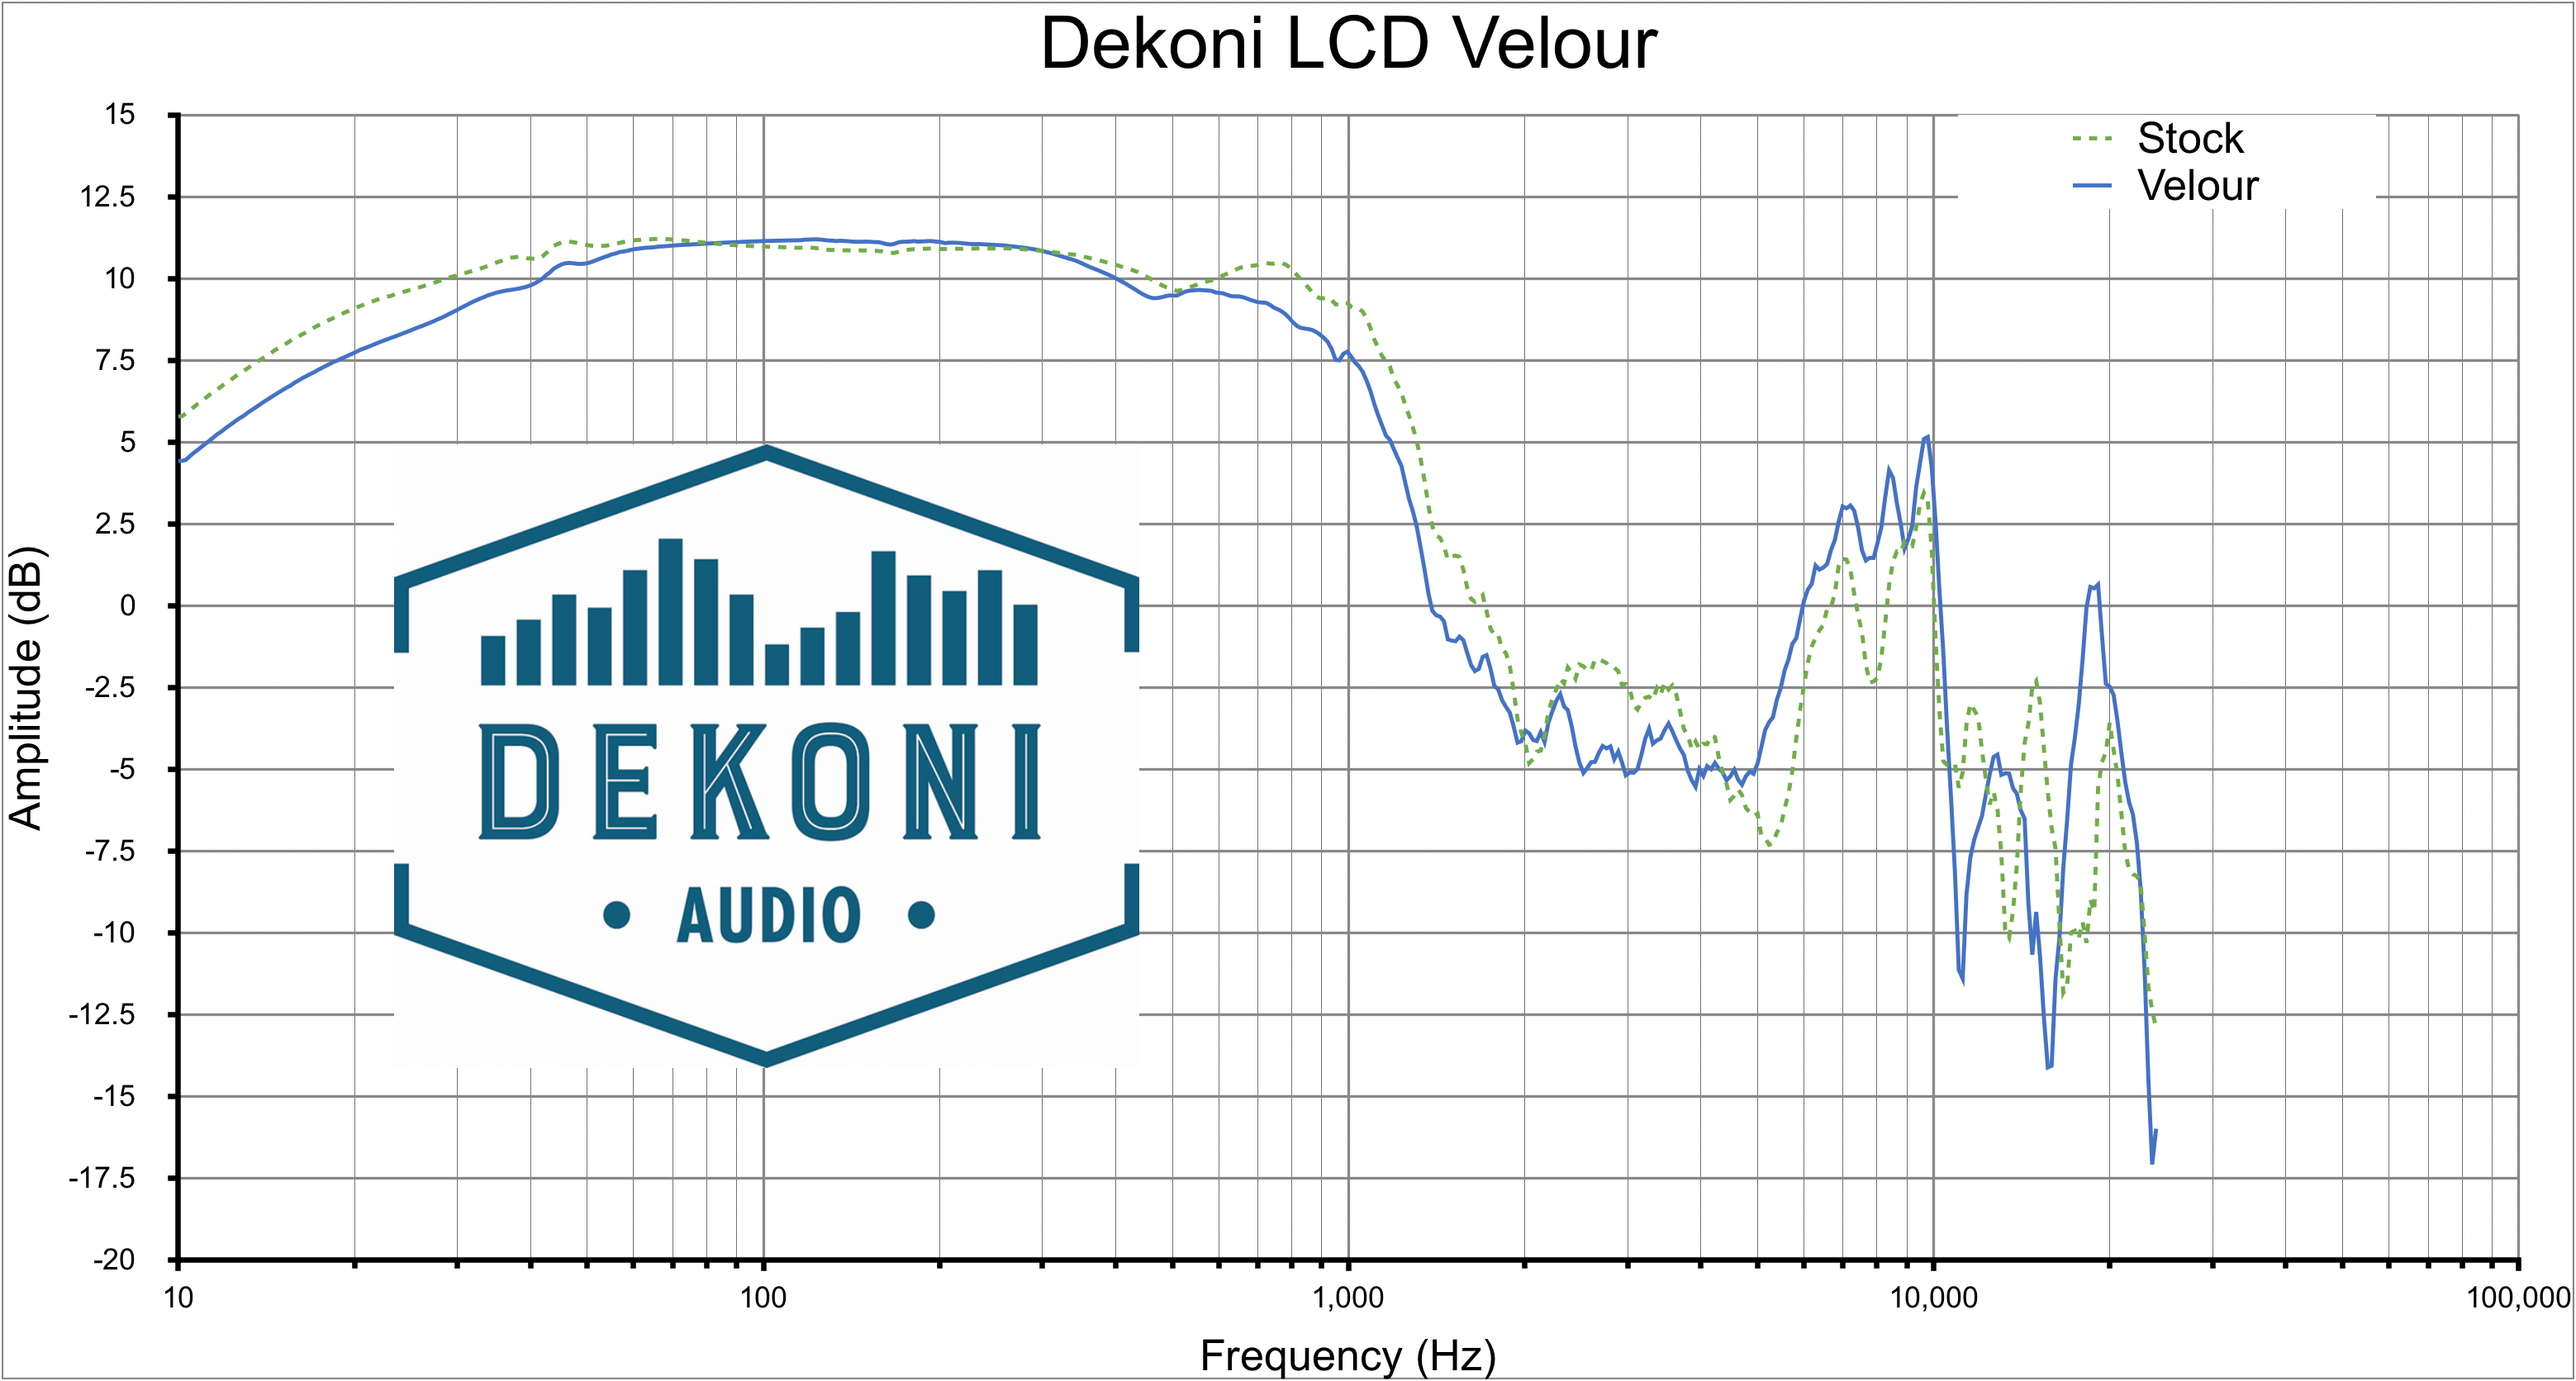 LCD Velour